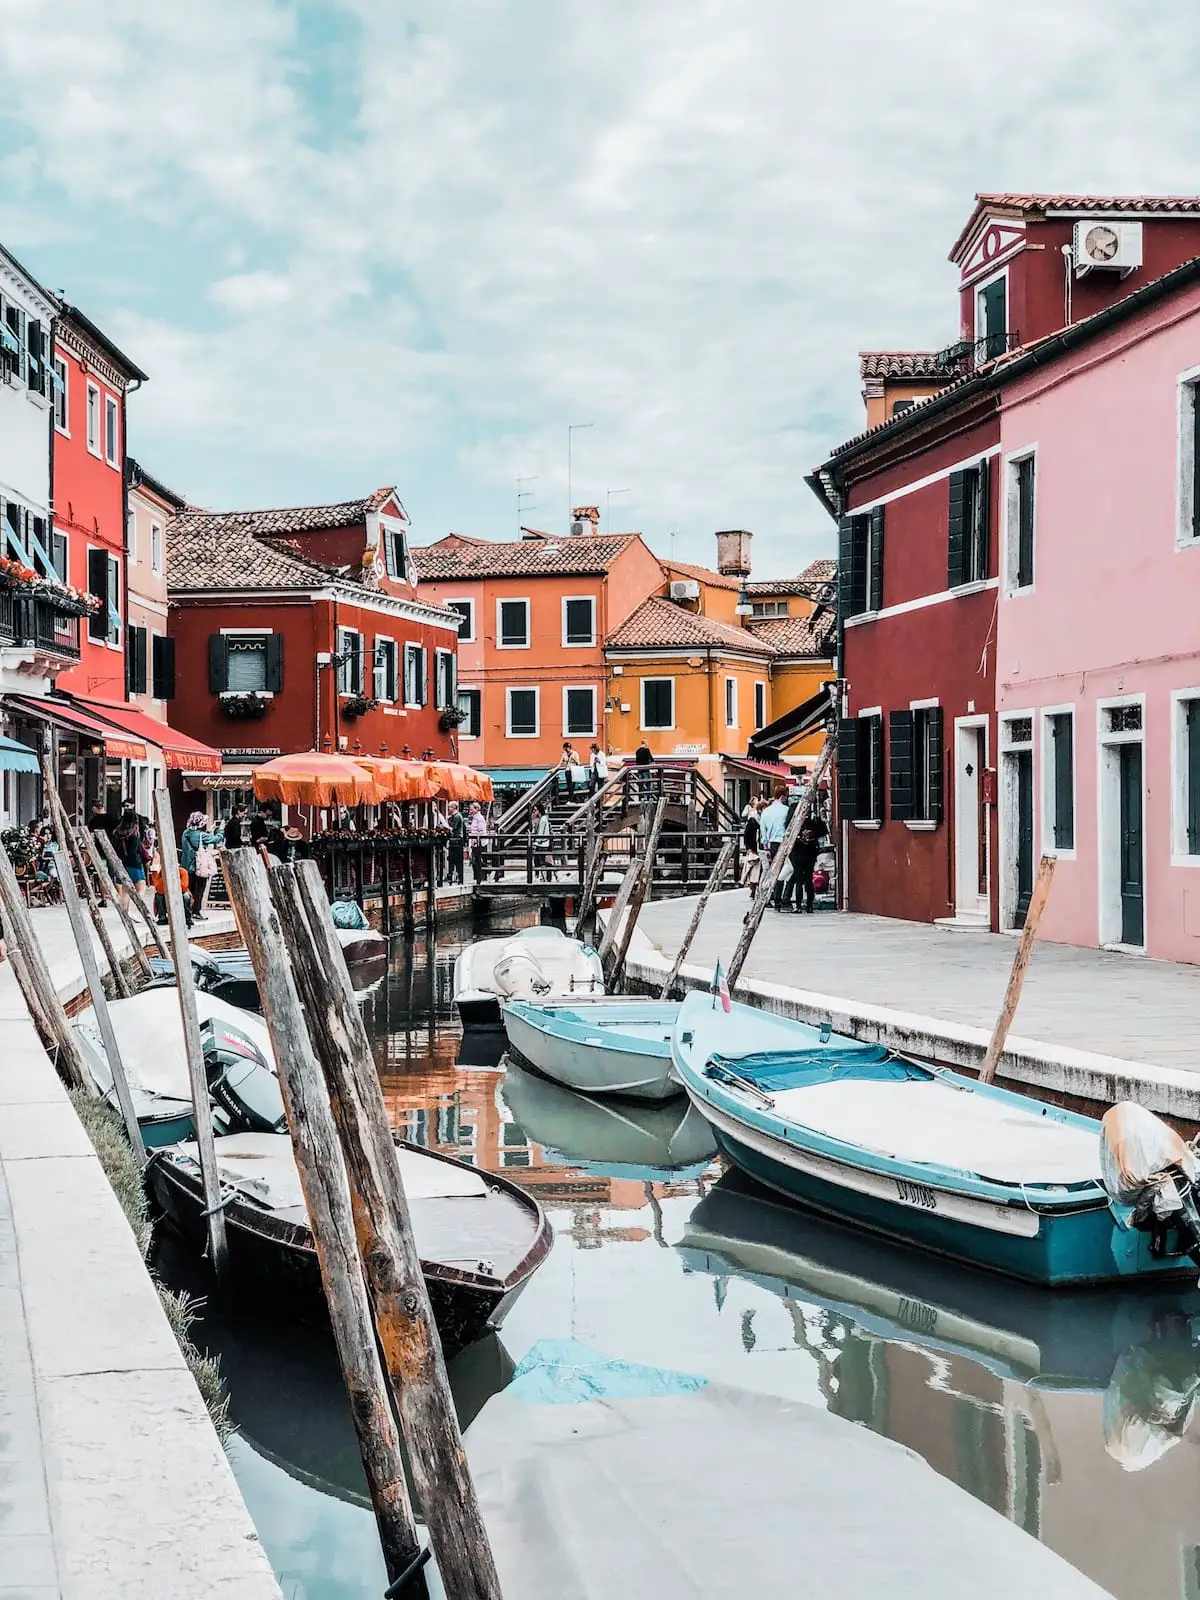 Venedig Sehenswürdigkeiten, Städtereise nach Venedig Städtetrip, Kanäle und Brücken in Venedig, Gondeln, Urlaub in Italien